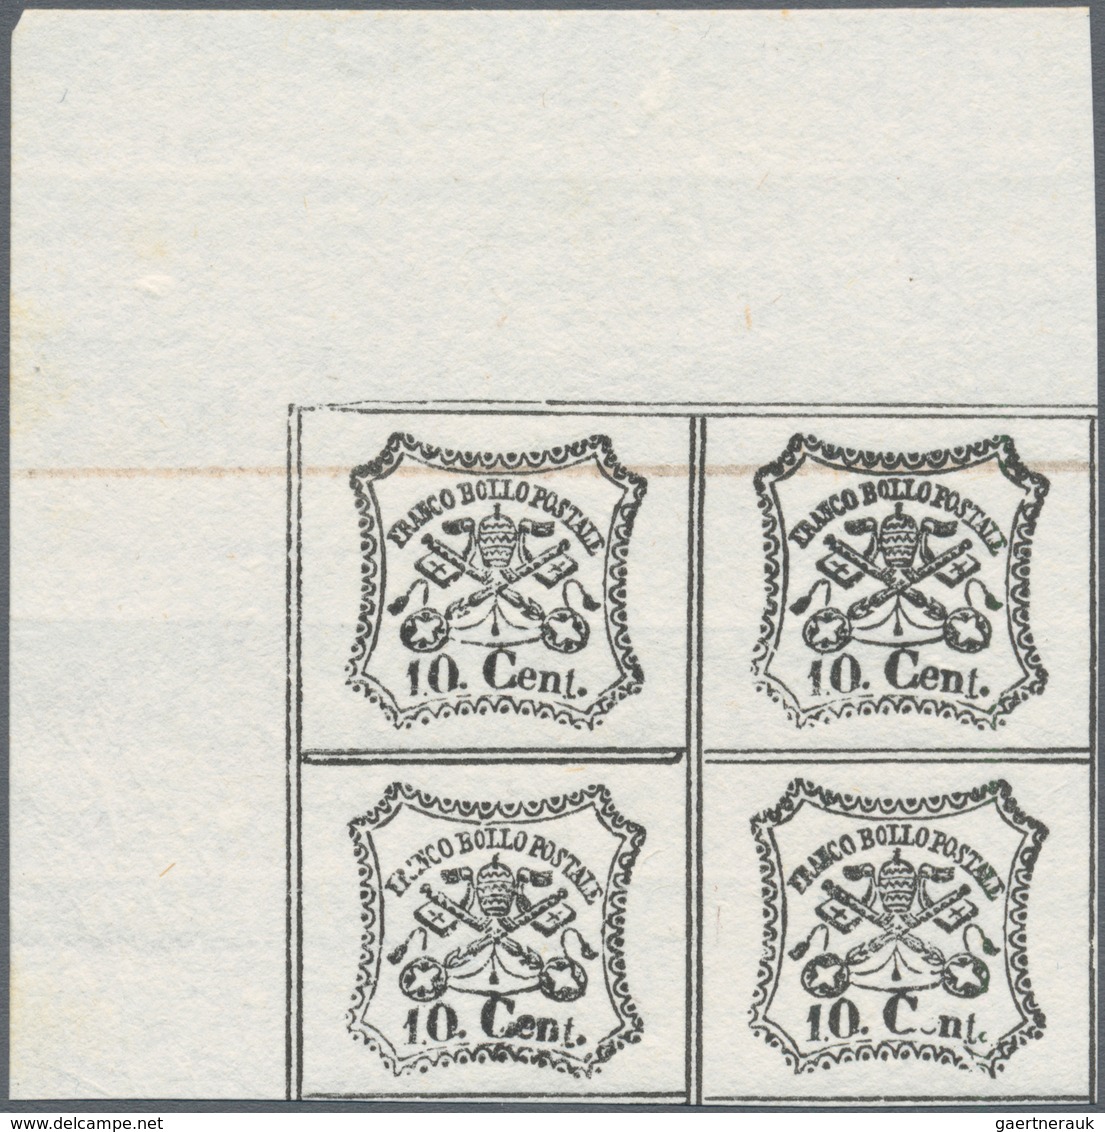 00728 Italien - Altitalienische Staaten: Kirchenstaat: 1889: reprints of MOENS on white paper, two series